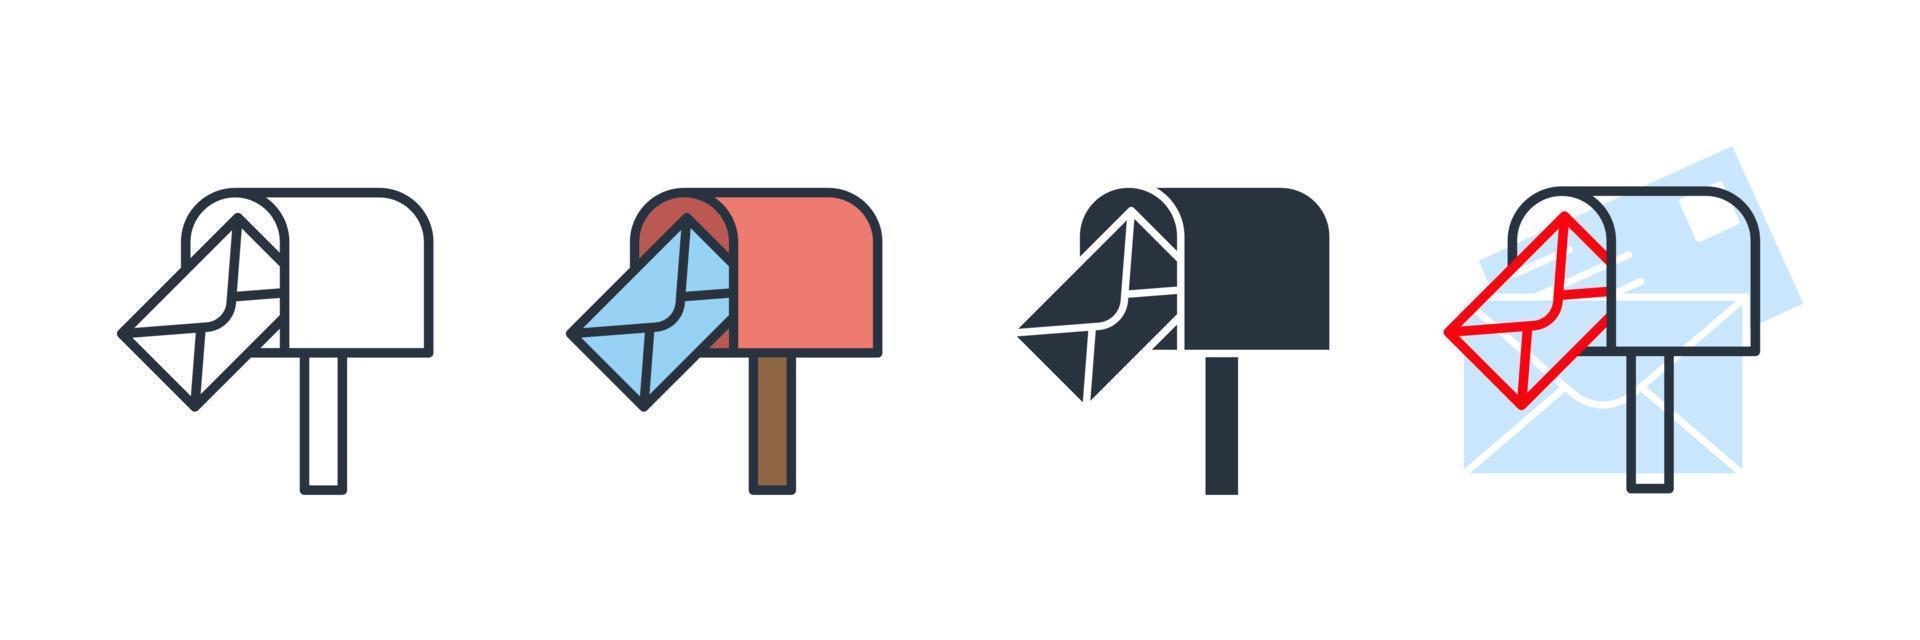 Ilustración de vector de logotipo de icono de casilla de correo. plantilla de símbolo de caja postal para la colección de diseño gráfico y web